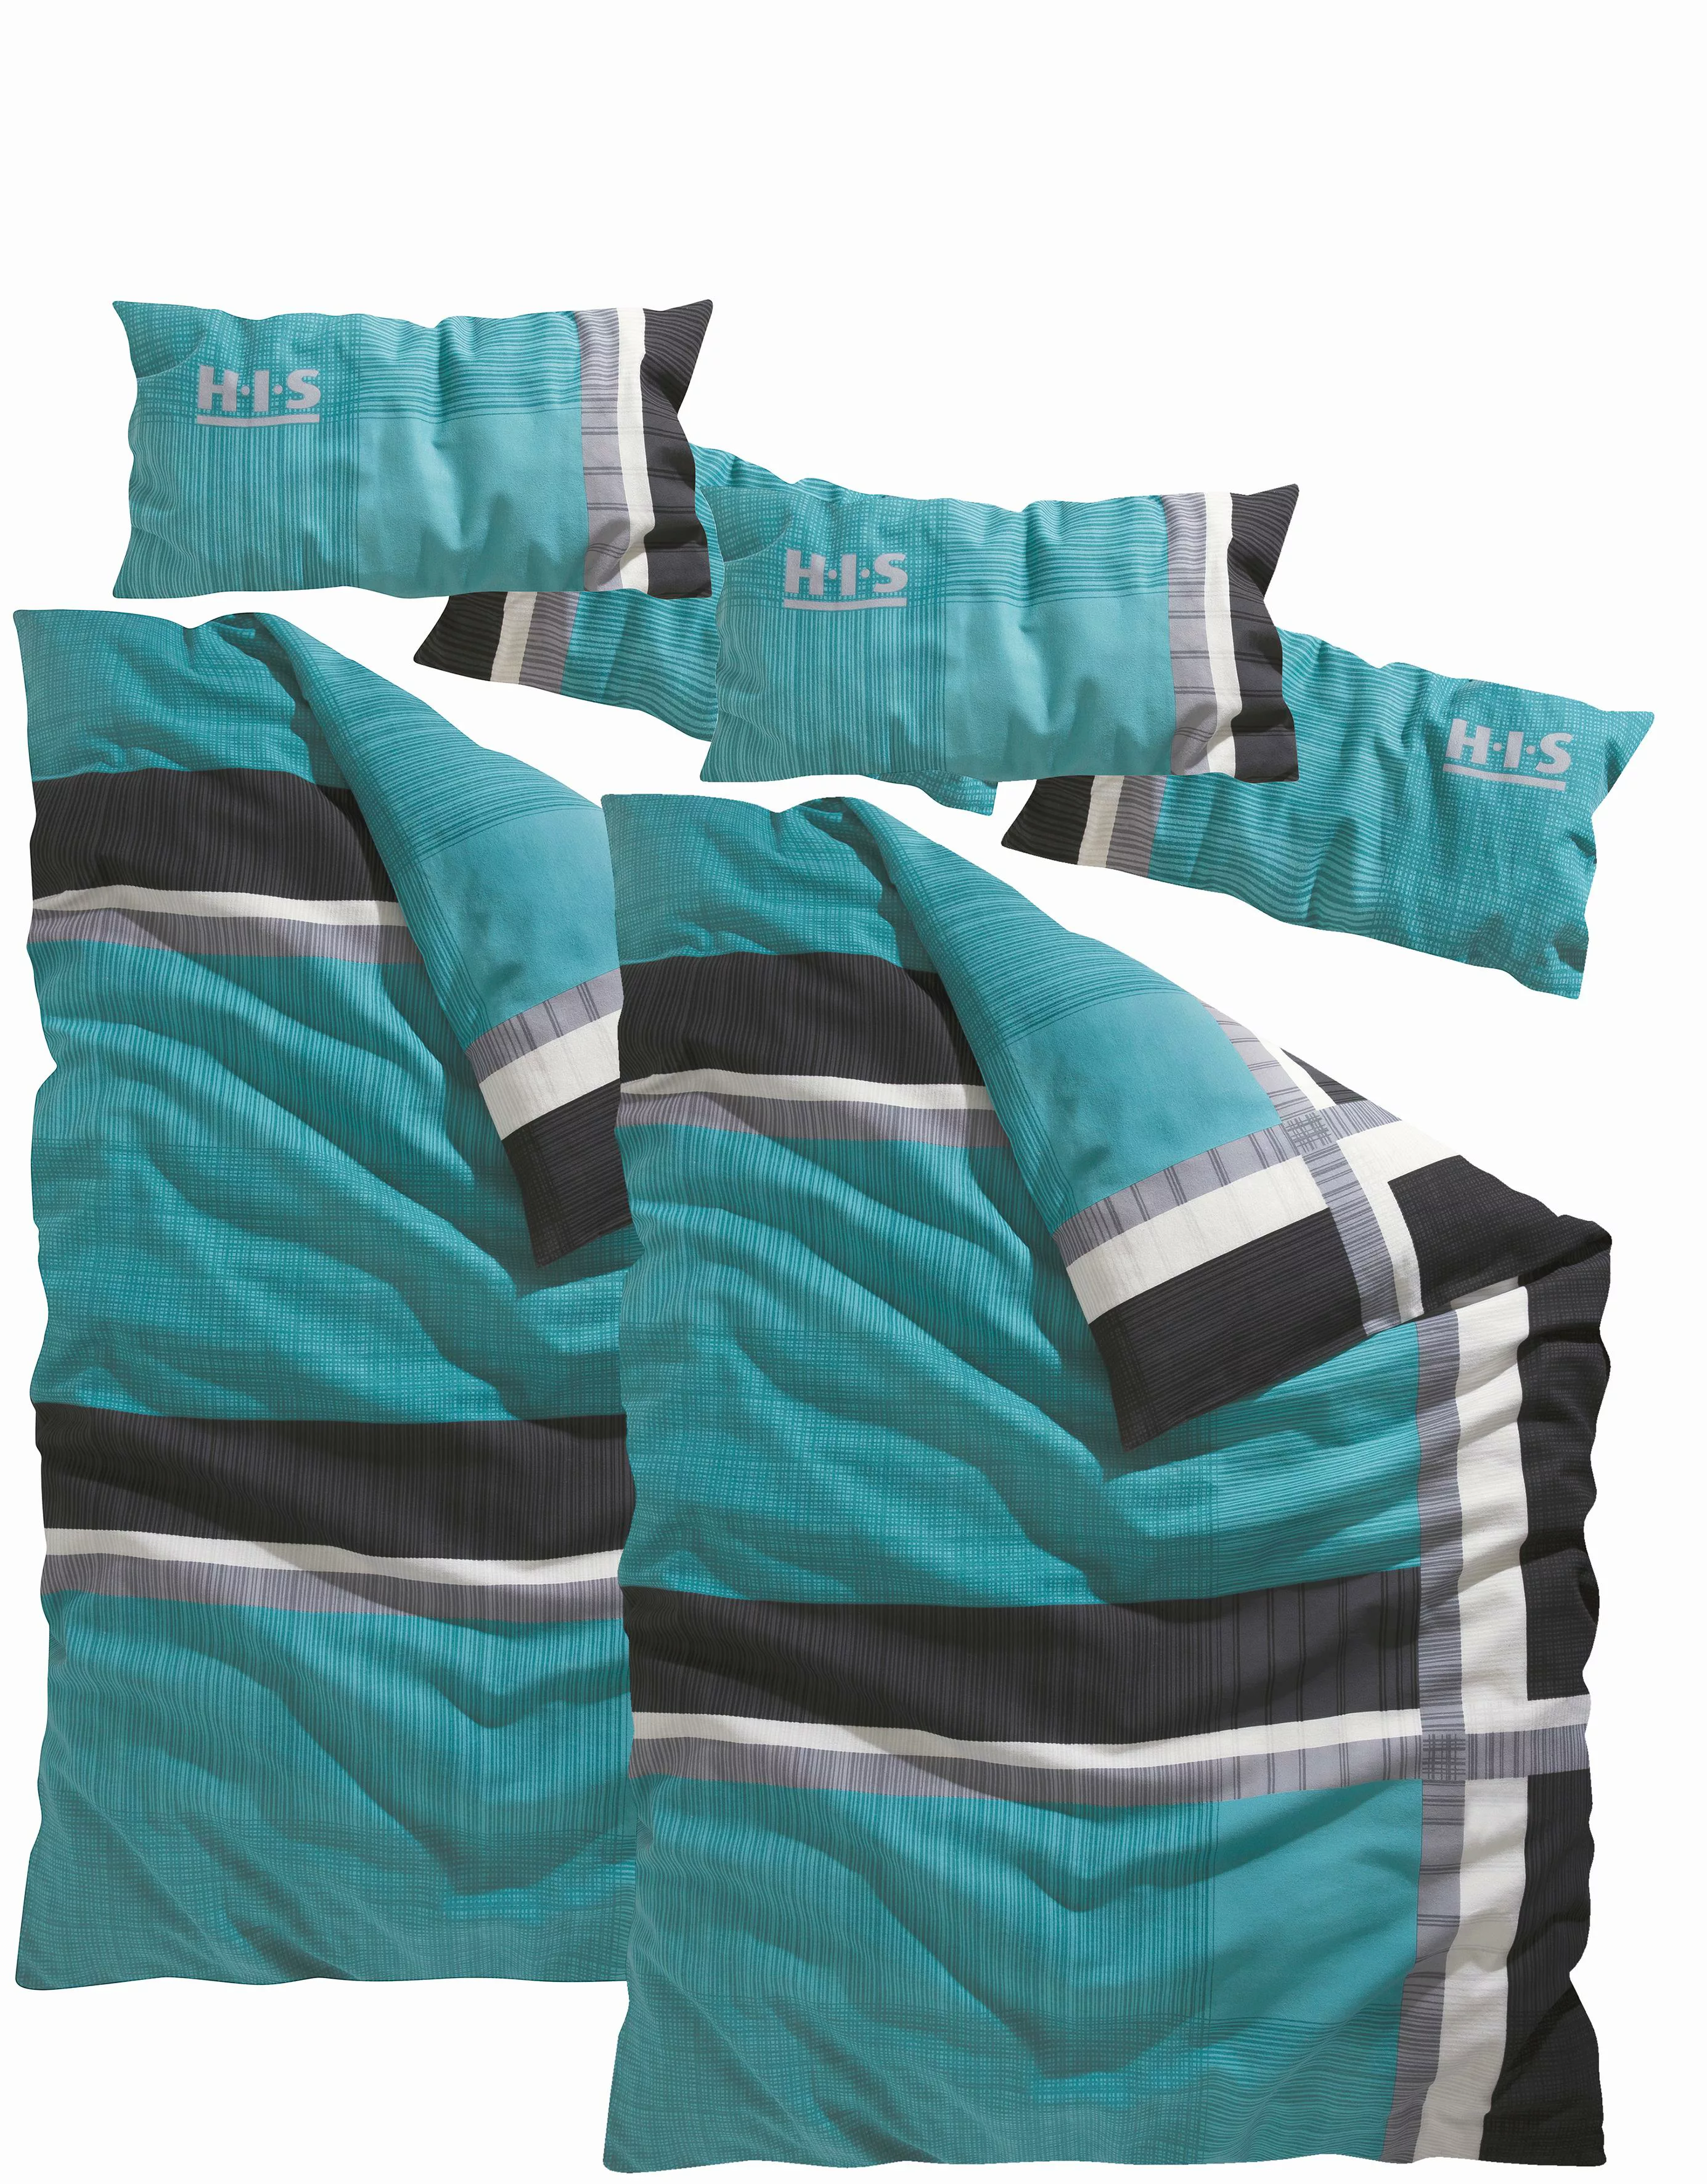 H.I.S Bettwäsche »Linus, 100% Baumwolle, Kissenbezug und Bettdeckenbezug mi günstig online kaufen